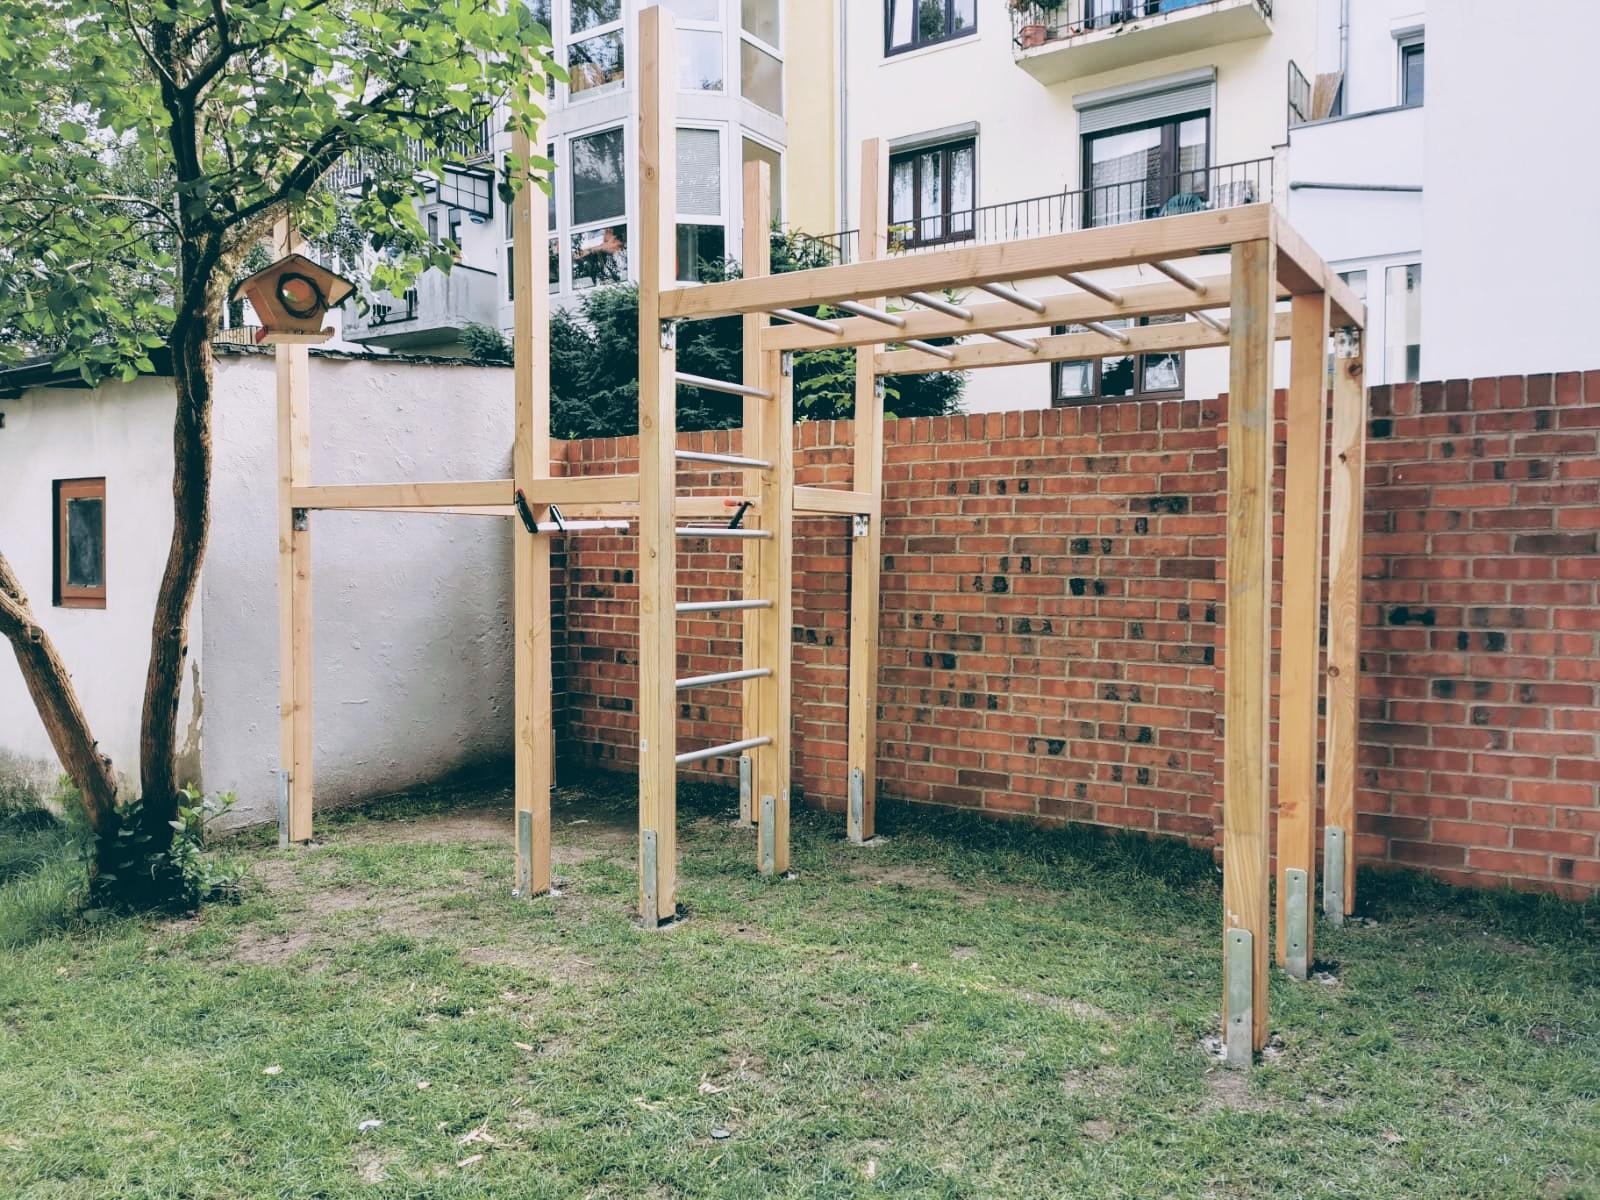 Kleine Gärten erfordern passgenaue Projekte. Still in the making, aber Ergebnis absehbar... #diy #livingwithkids #garten